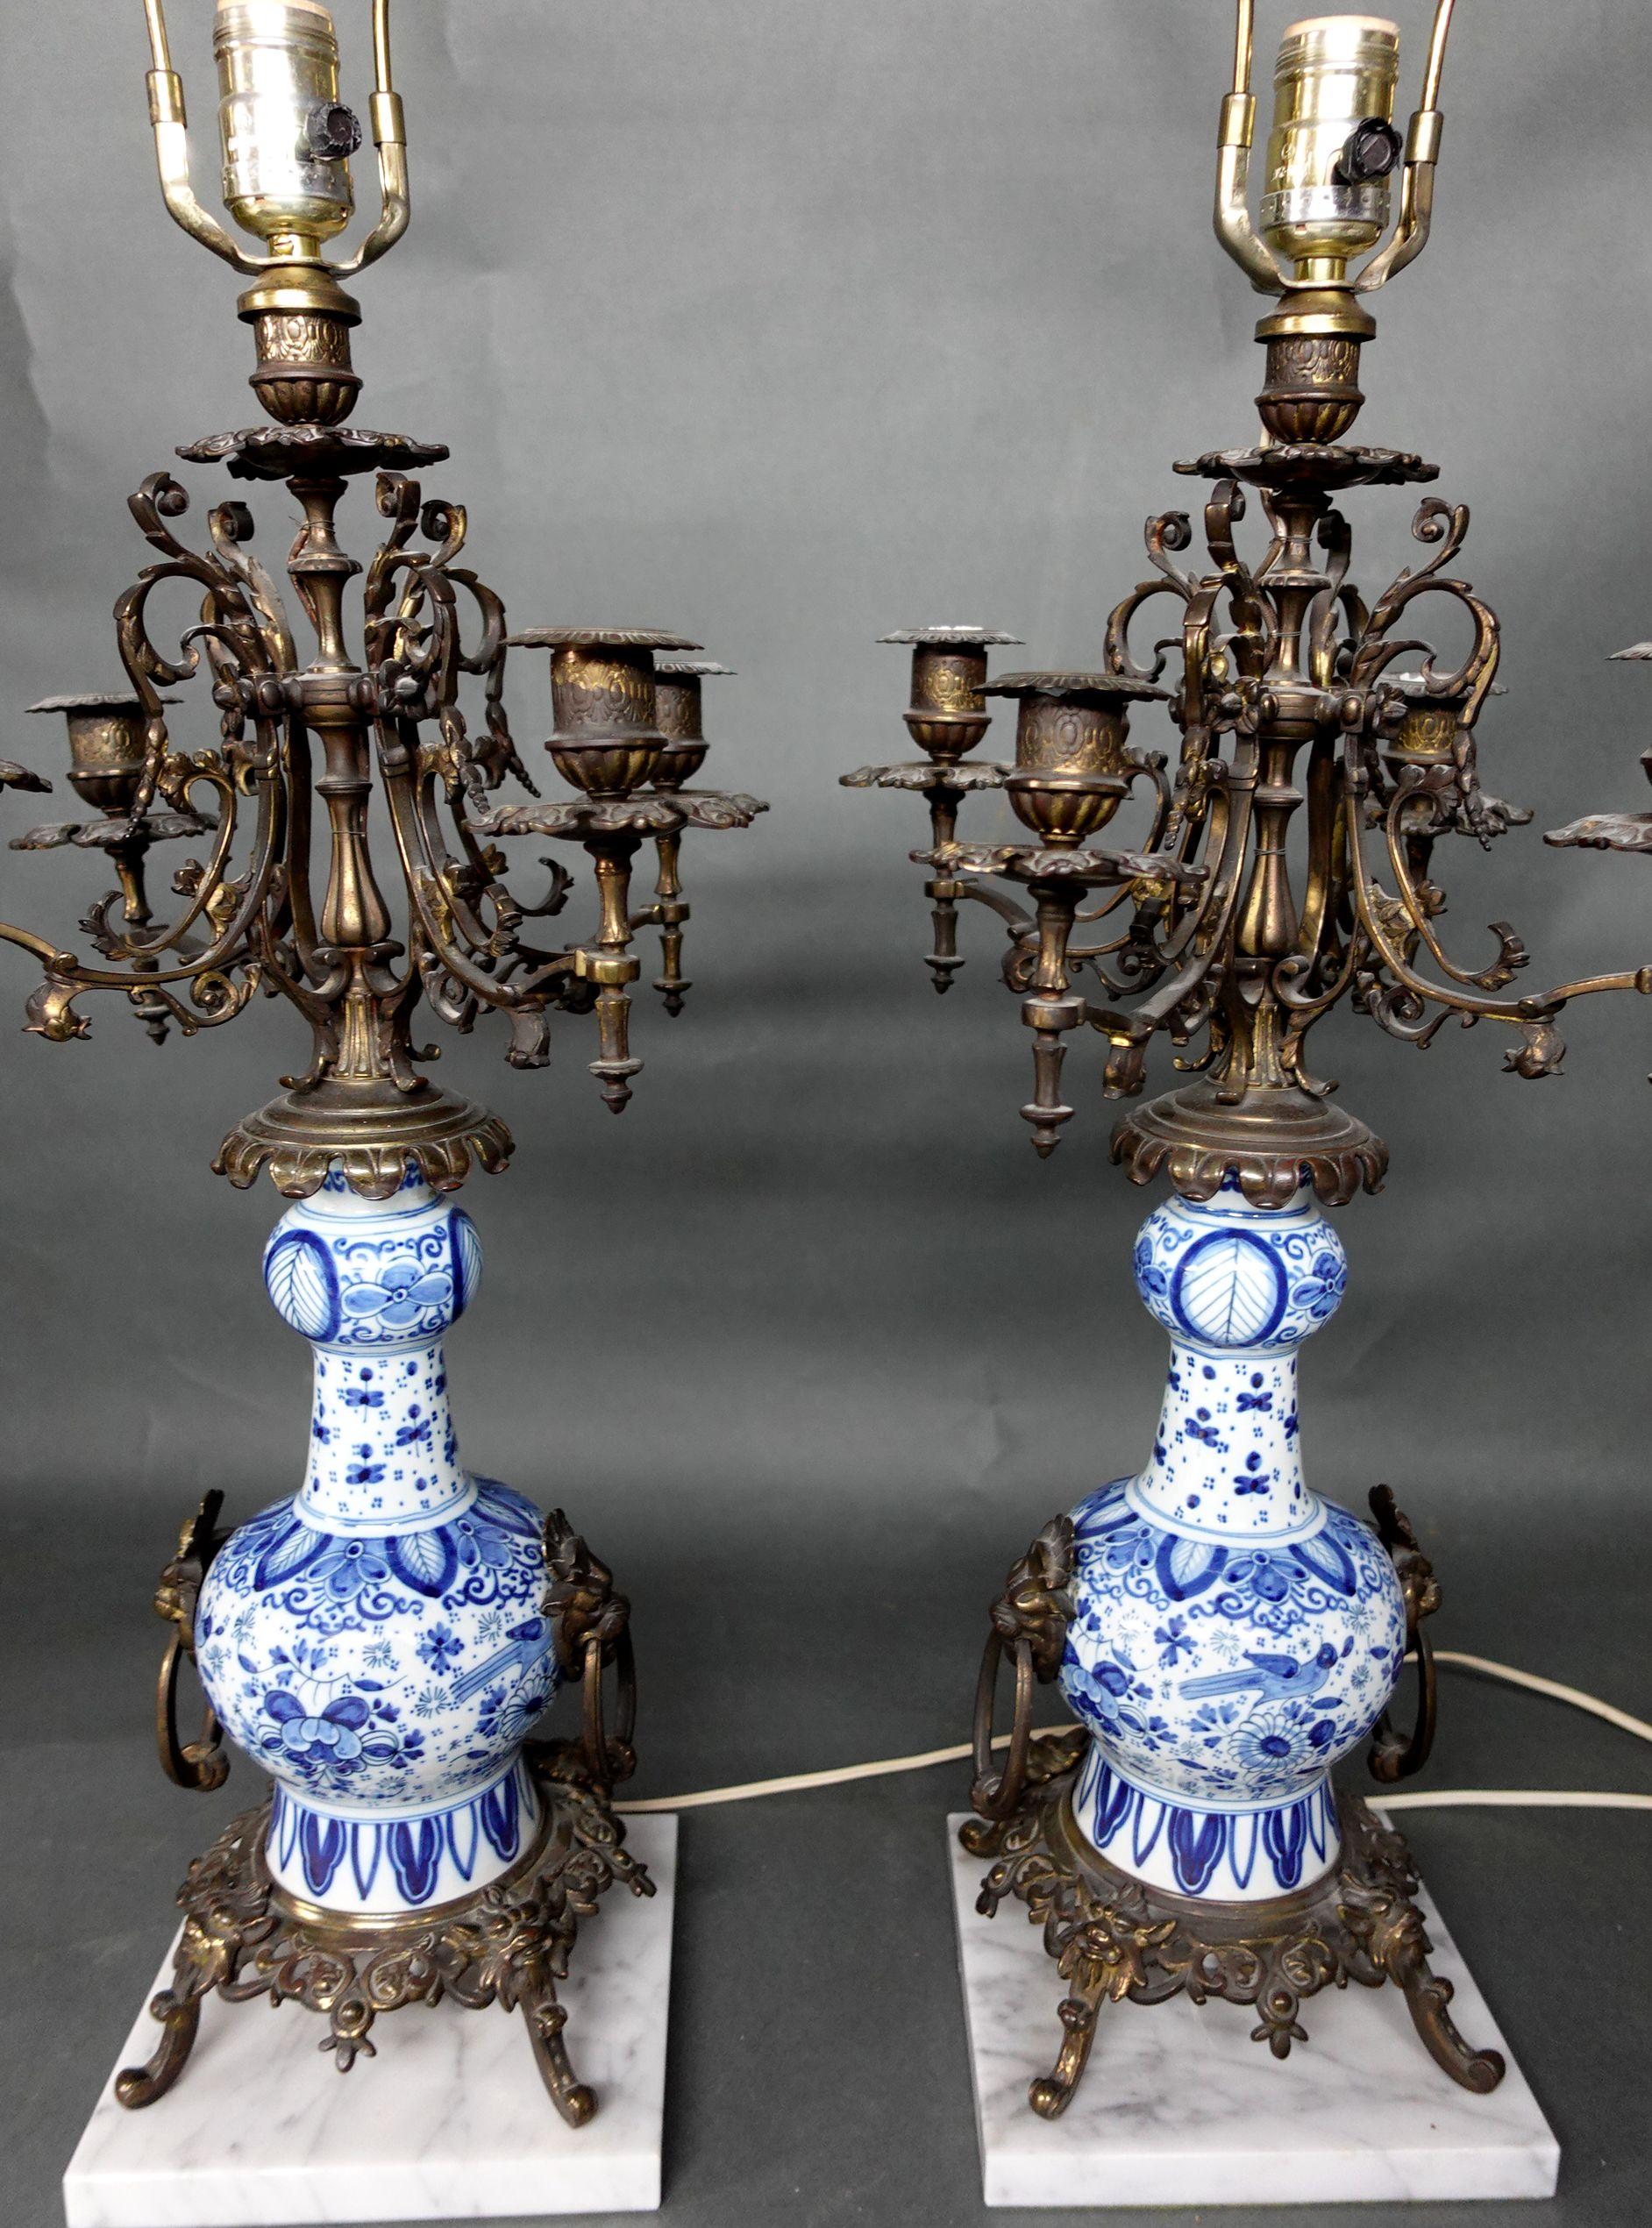 Paire de vases/bases de lampe en porcelaine bleue et blanche
monté sur des pieds en métal et reposant sur une base carrée en marbre, électrifié, ht. global. 31 1/2, vase ht. 10 in.
Les lampes fonctionnent bien.

 